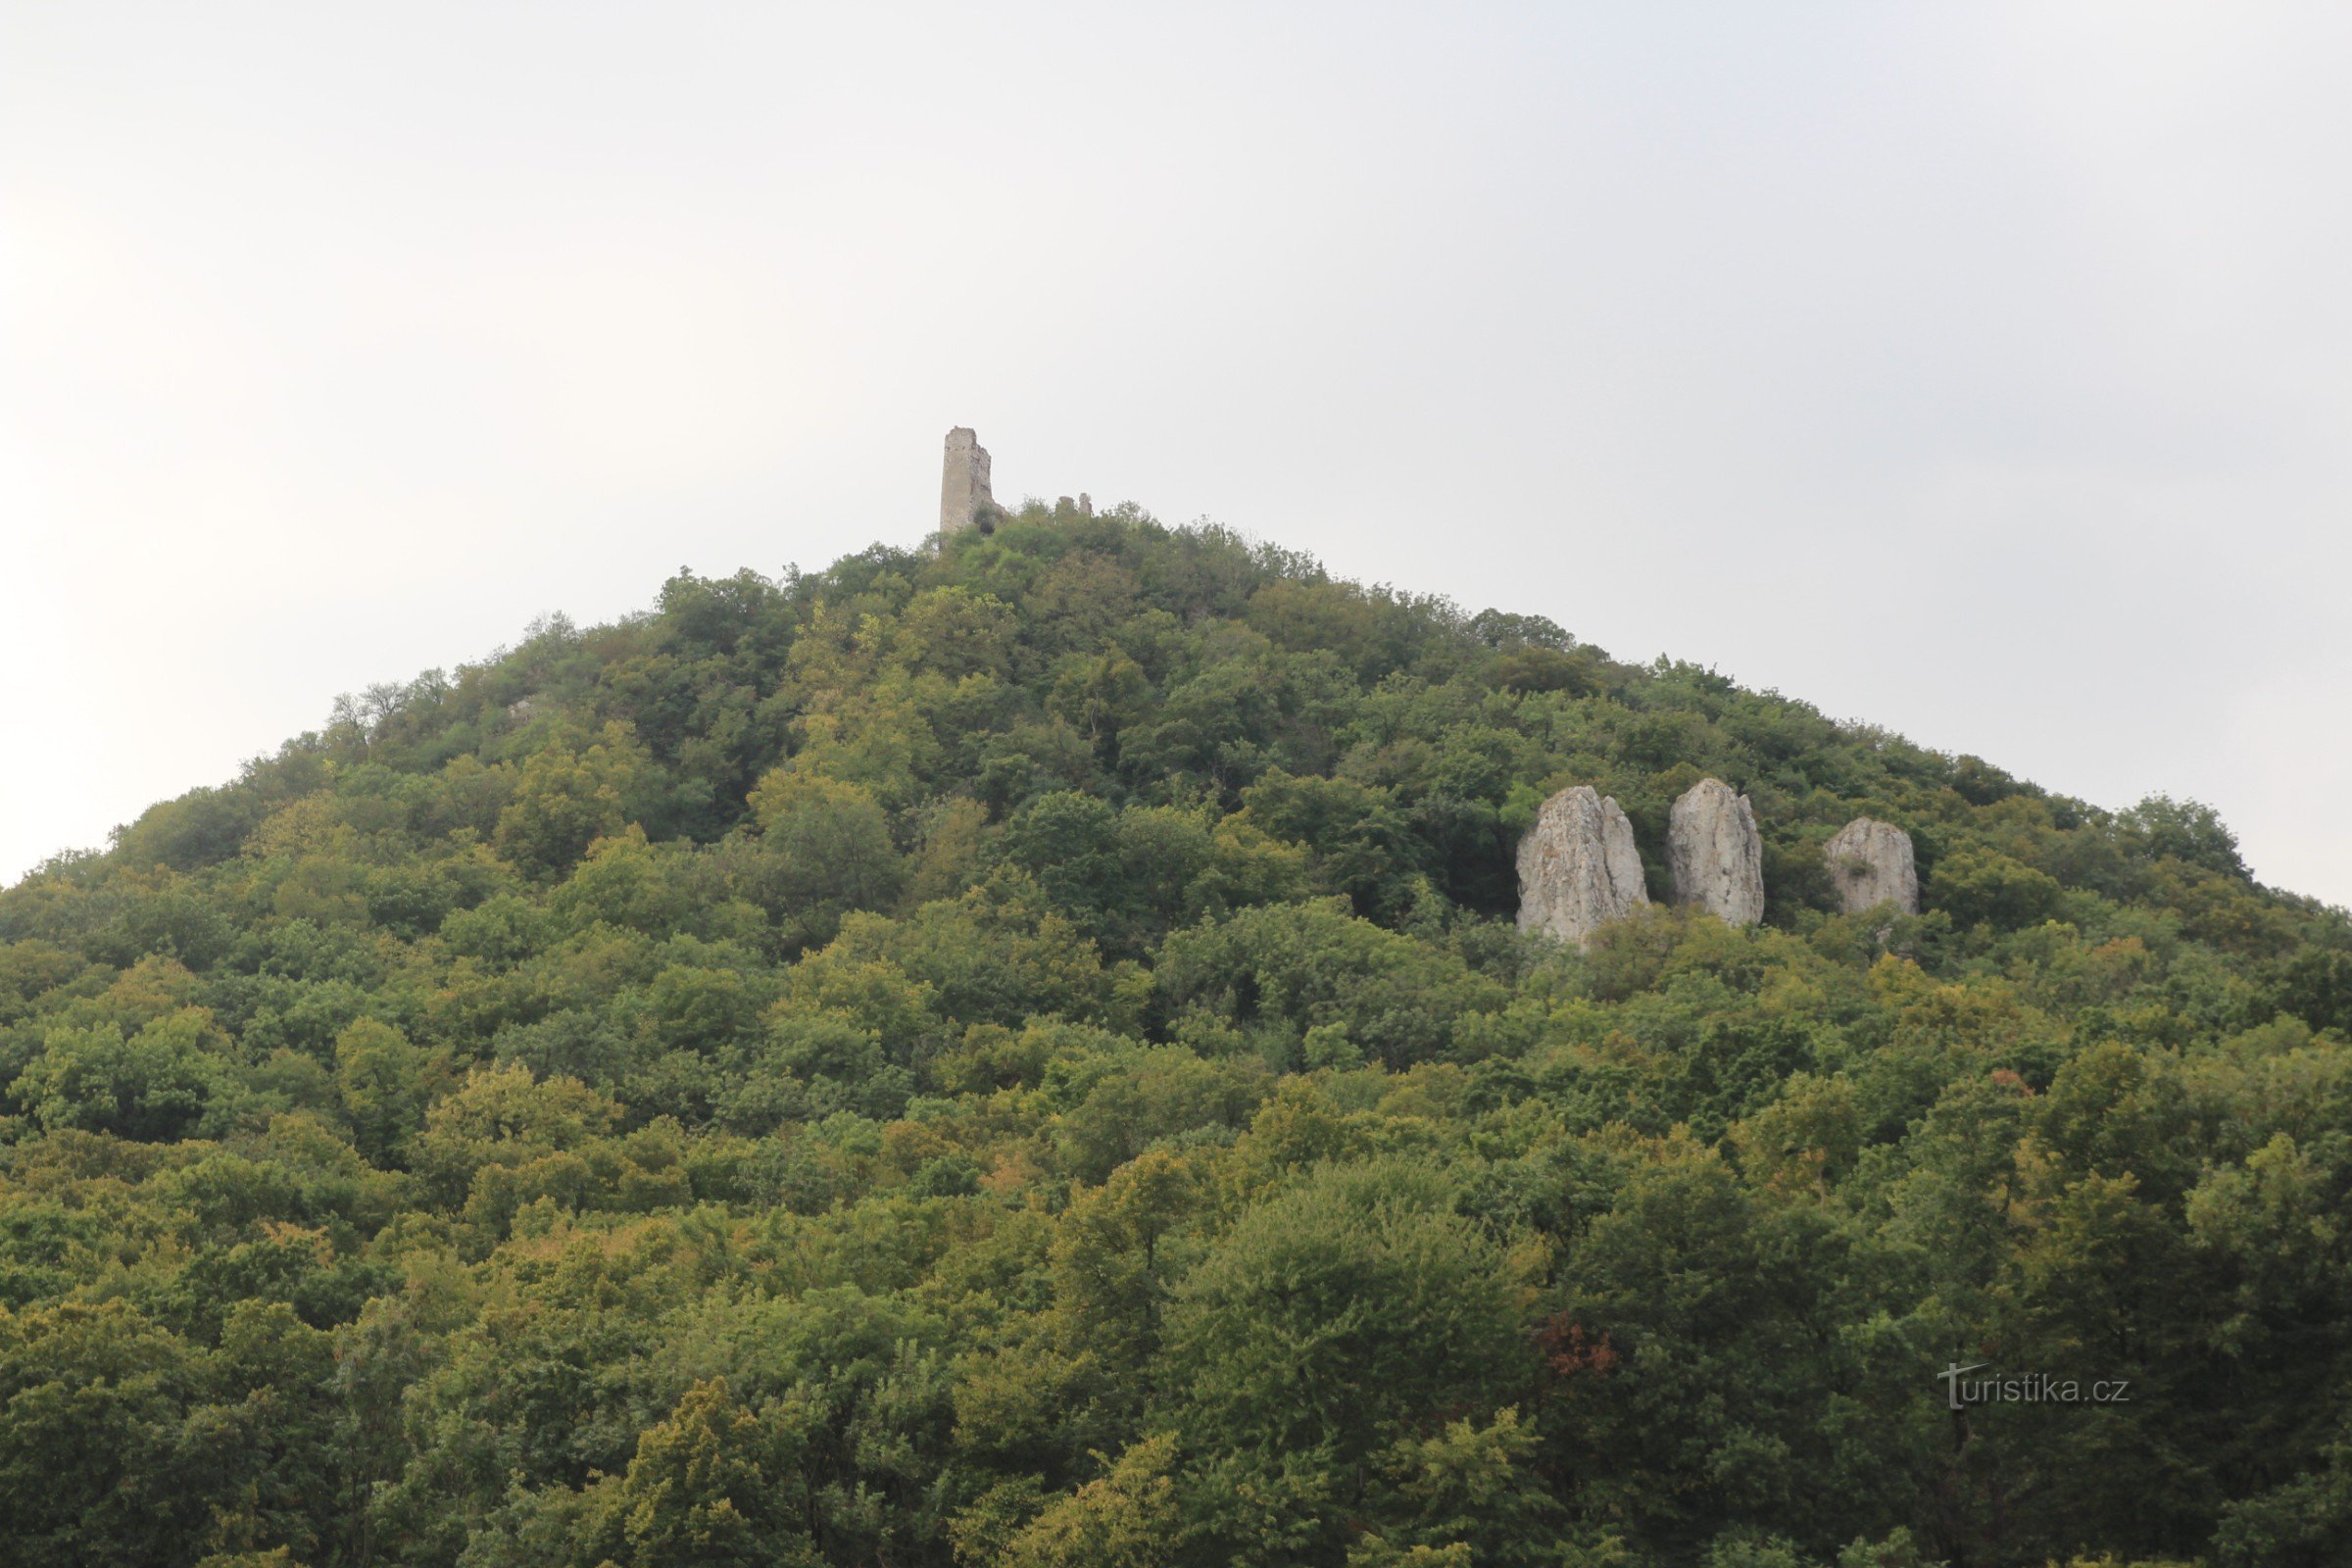 Děvín - a formação rochosa das Três Virgens, no topo da qual estão as ruínas do Castelo Děvičky